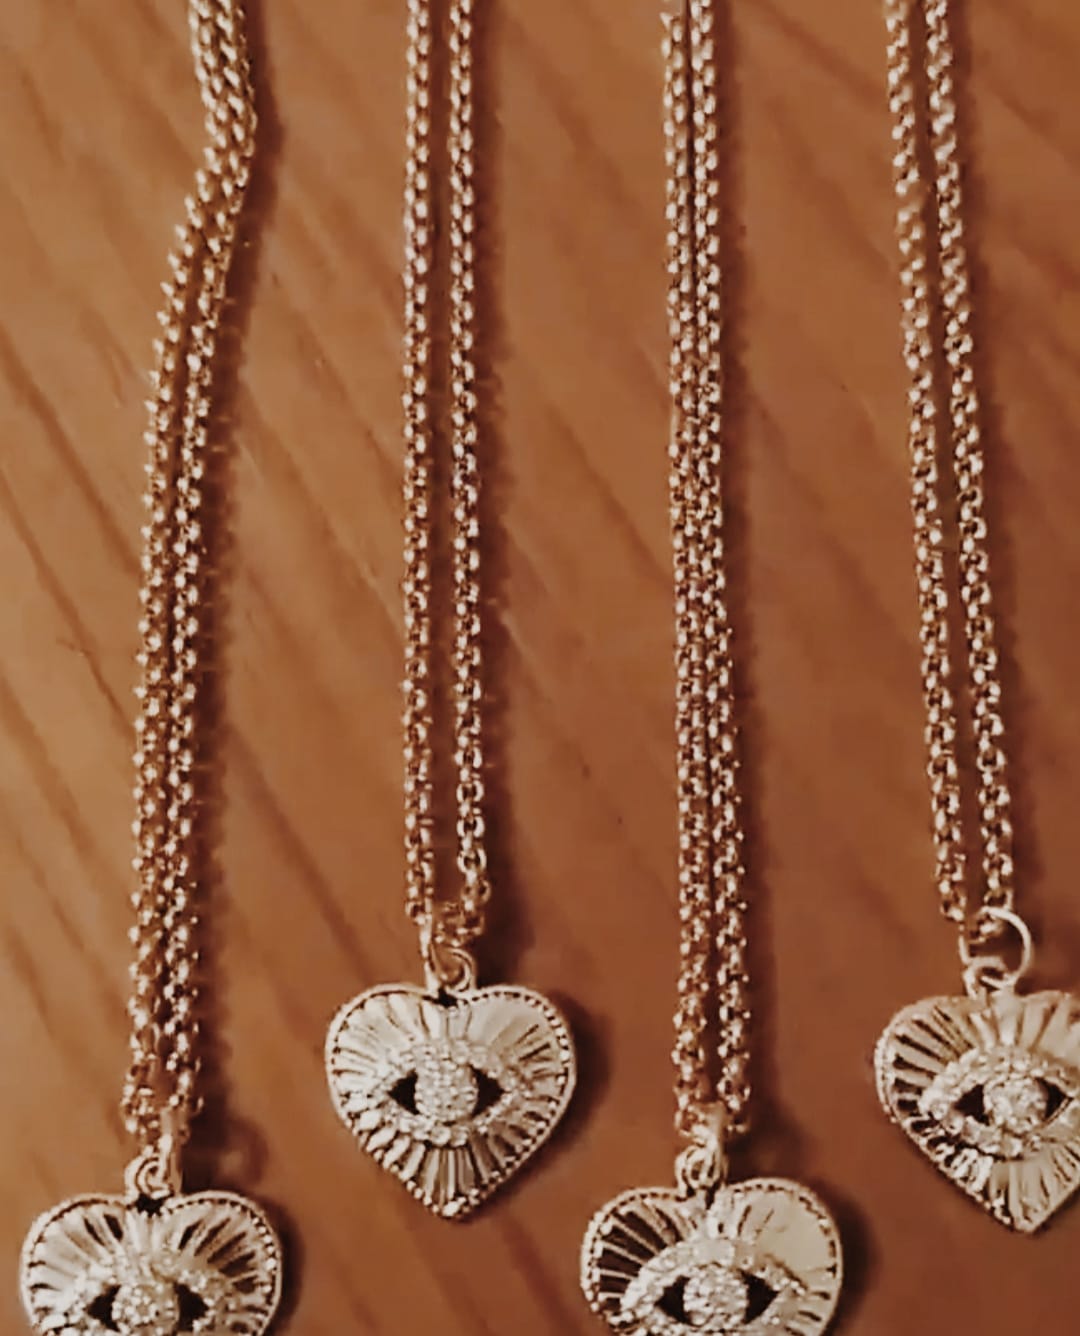 Colar com fio fino em aço com pendente em forma de coração com olho no centro, em cobre e zircónias